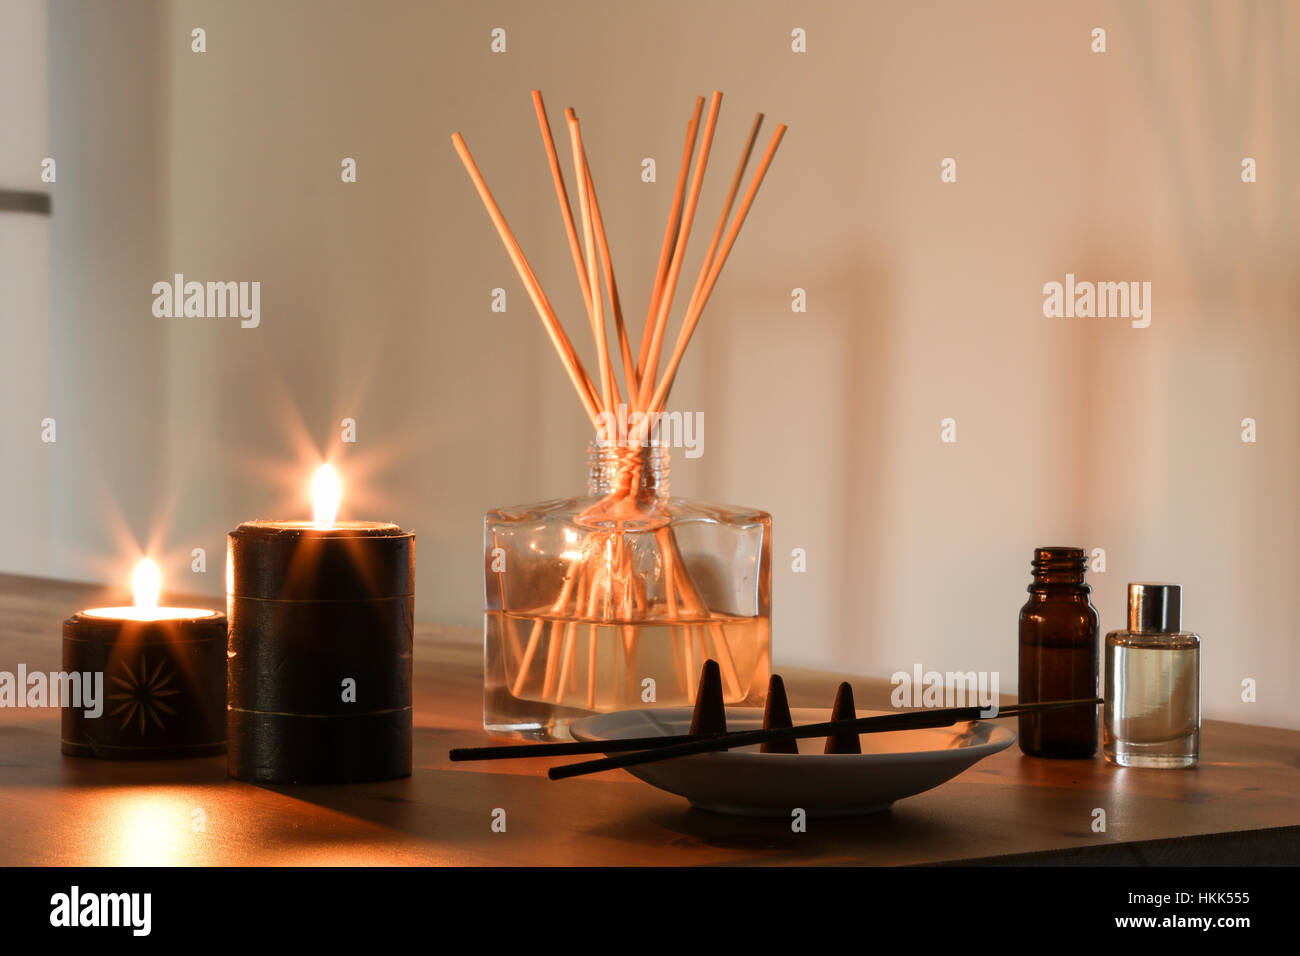 Startseite Duft Atmosphäre Kerzen Weihrauch Duft Geruch Glas Leuchten ruhig Warm rauchigen Stockfoto